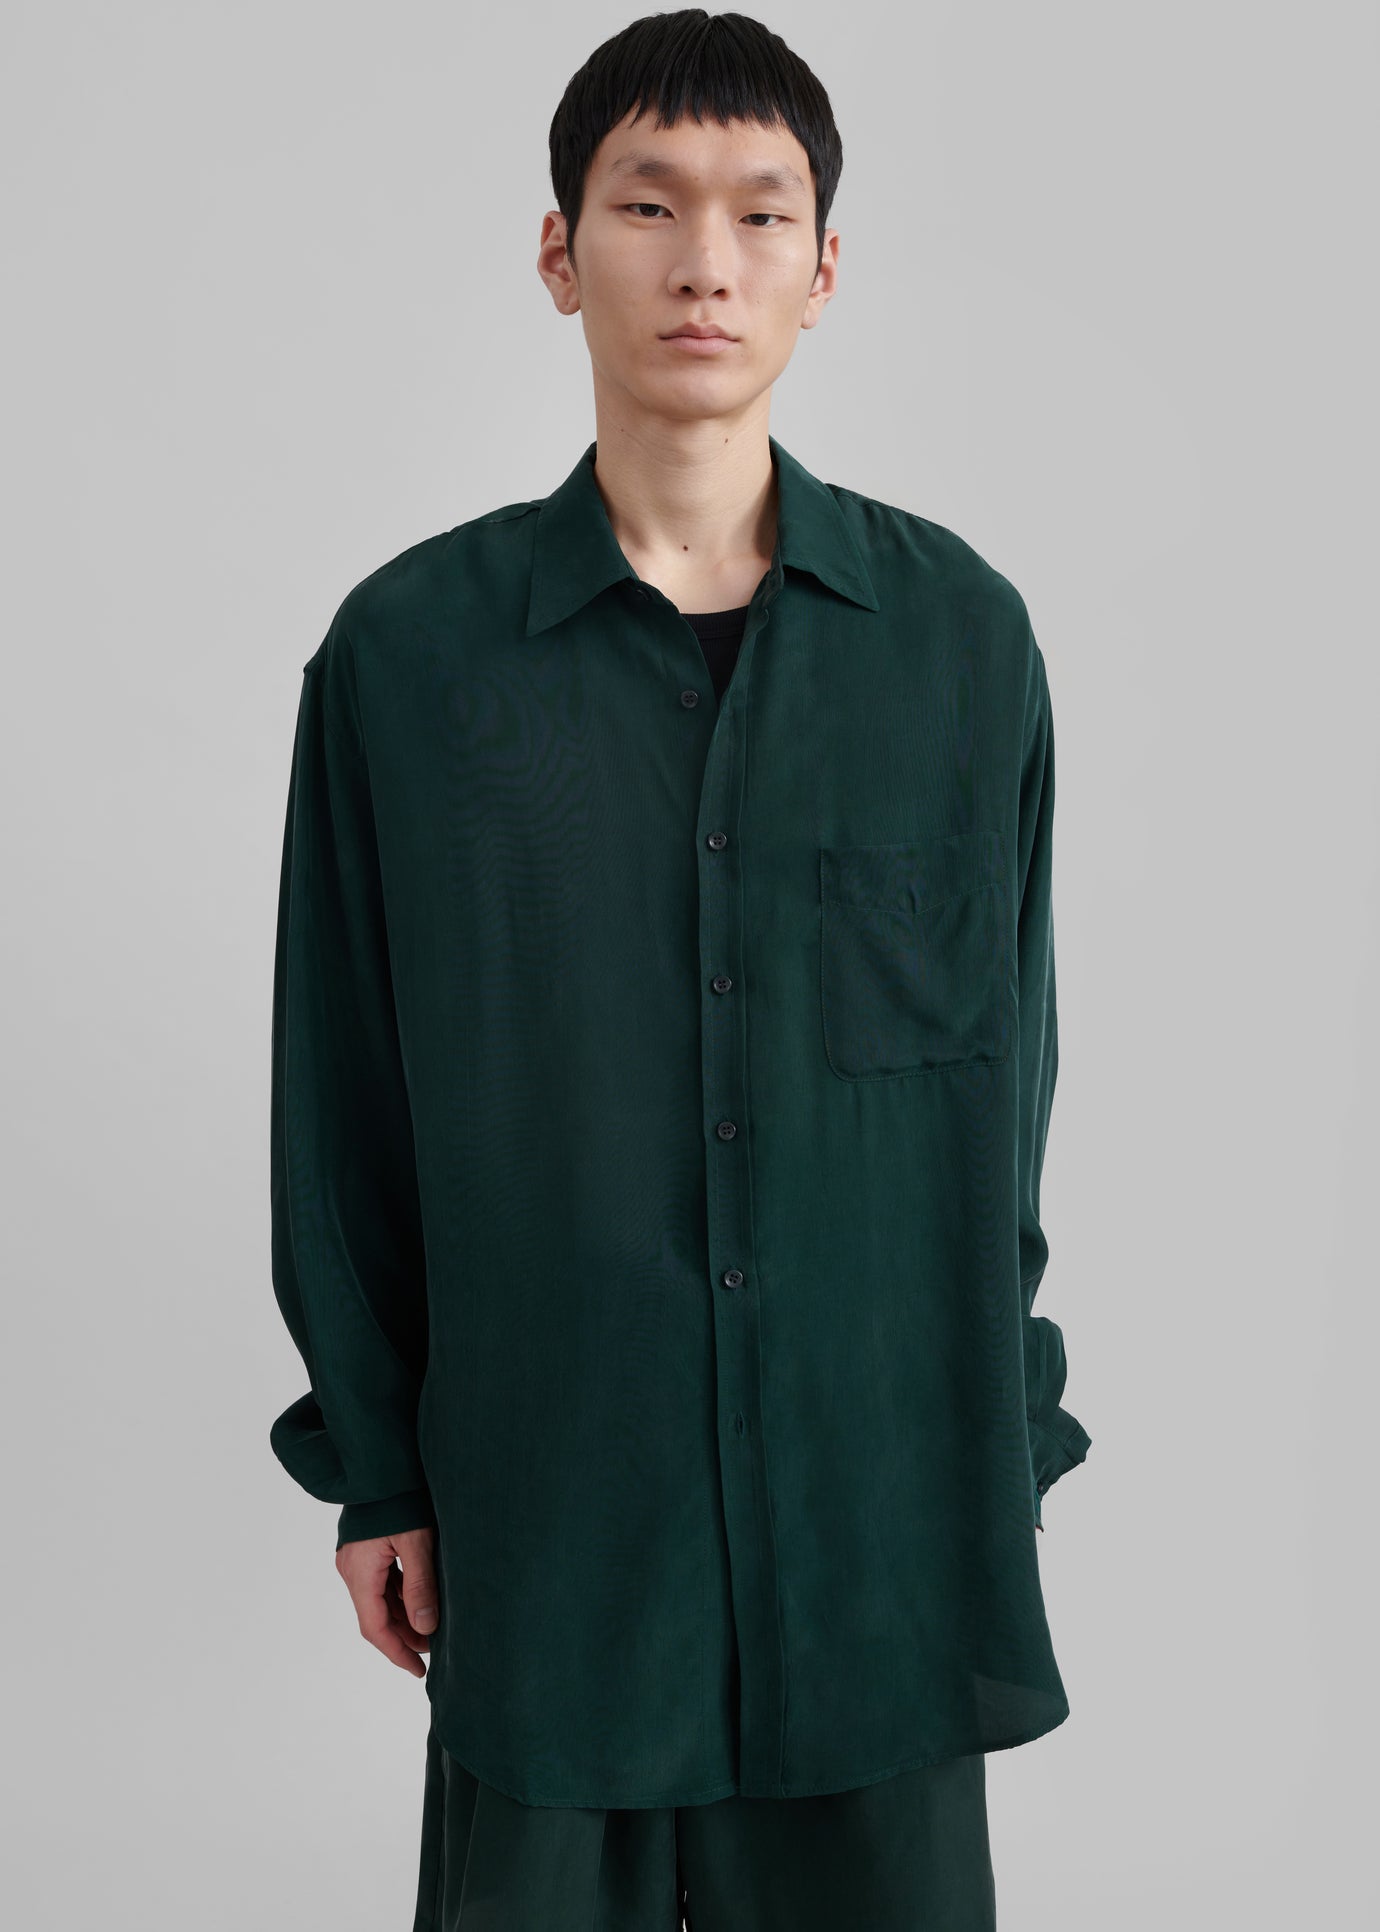 Leland Silky Shirt - Forest Green - 1